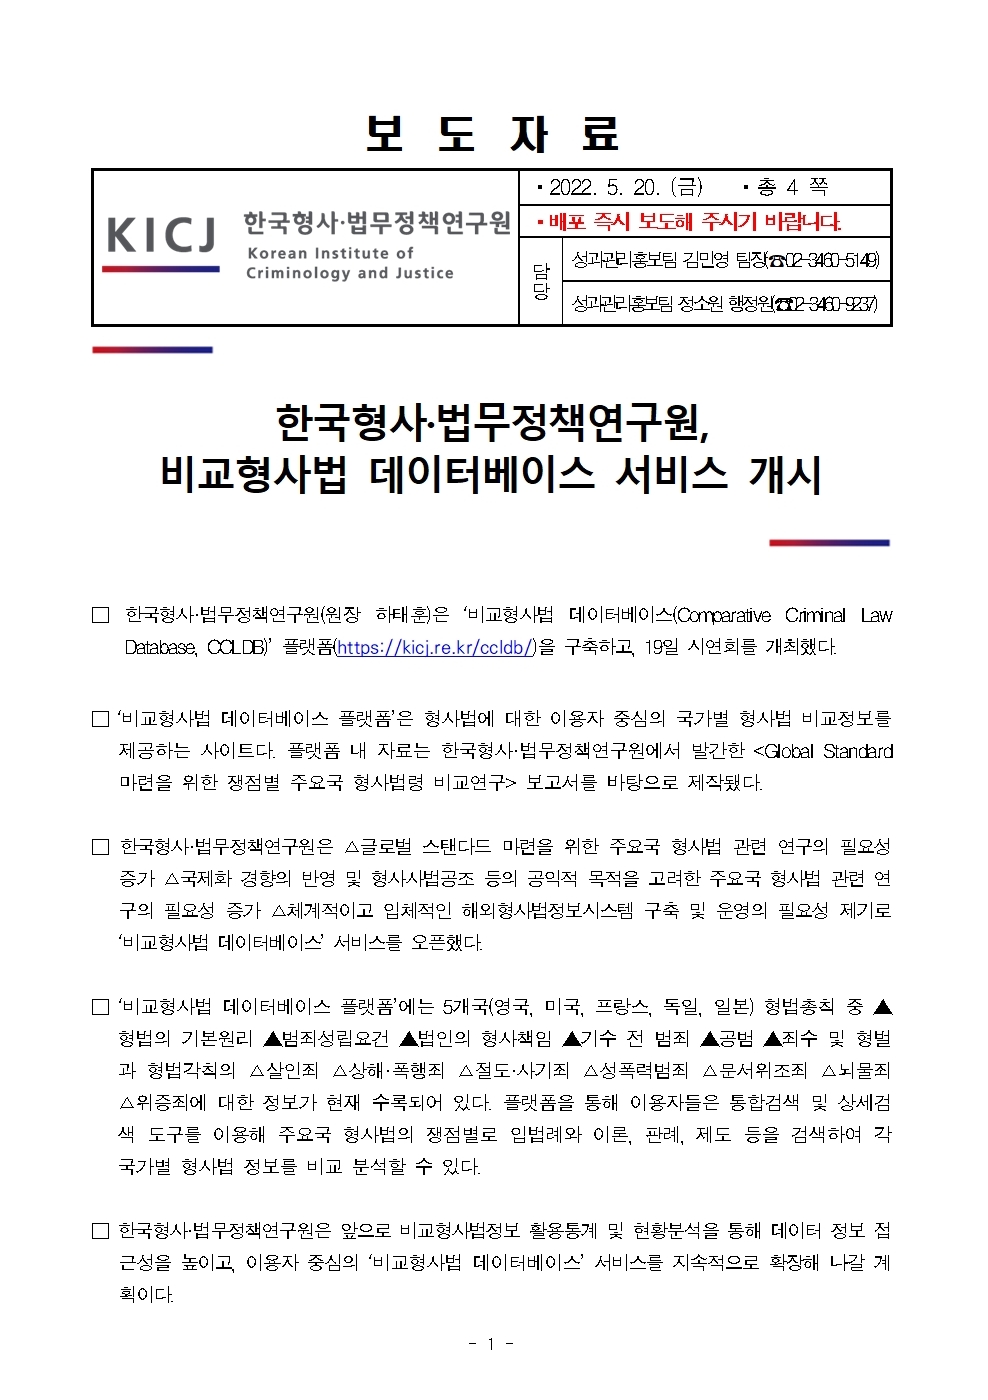 한국형사·법무정책연구원 비교형사법 데이터베이스 서비스 개시 : 자세한 내용은 하단 pdf파일 참조